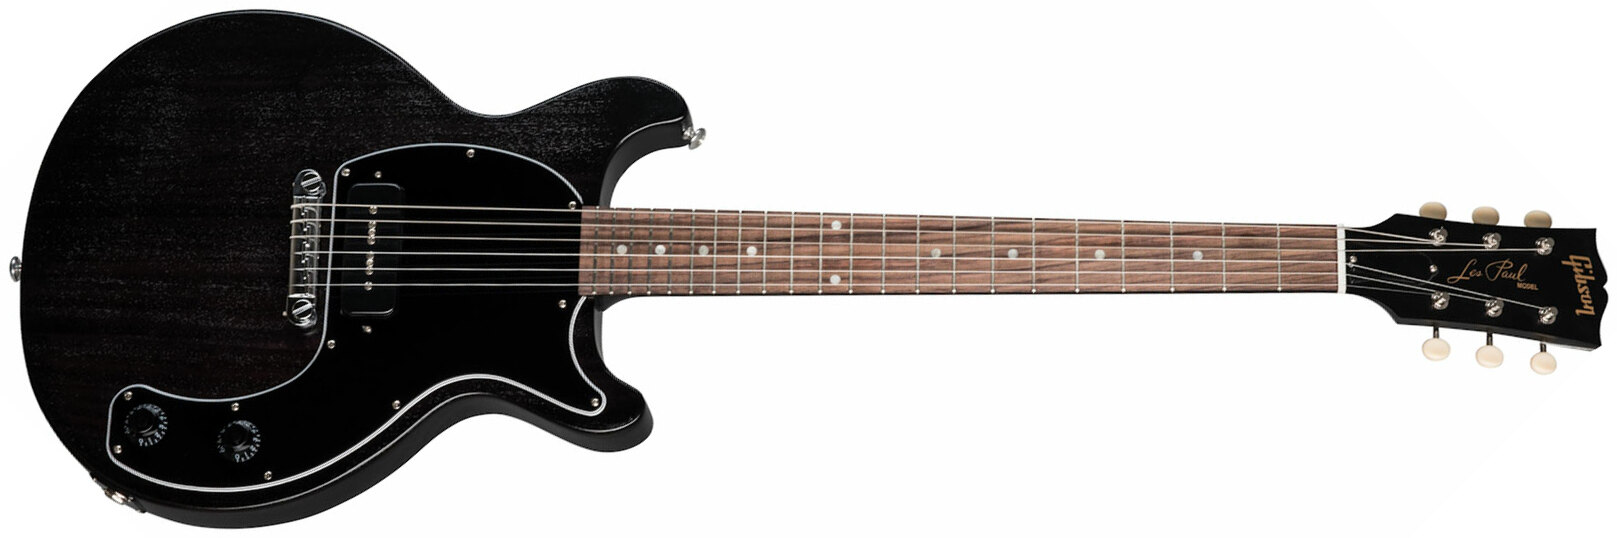 Gibson Les Paul Junior Tribute Dc Modern P90 - Worn Ebony - Guitarra eléctrica de doble corte - Main picture